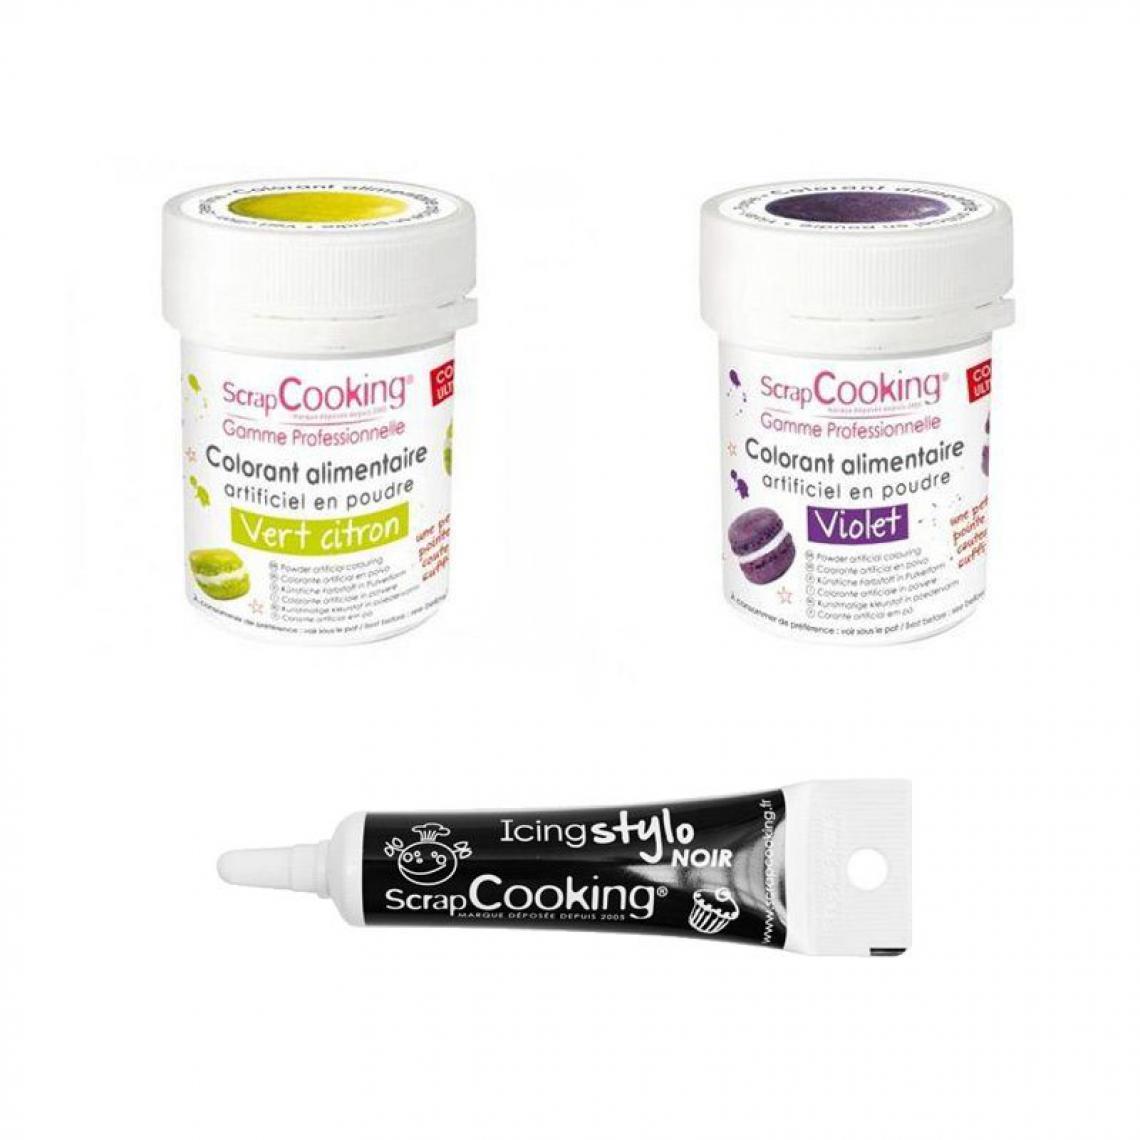 Scrapcooking - 2 colorants alimentaires violet-vert citron + Stylo glaçage noir - Kits créatifs